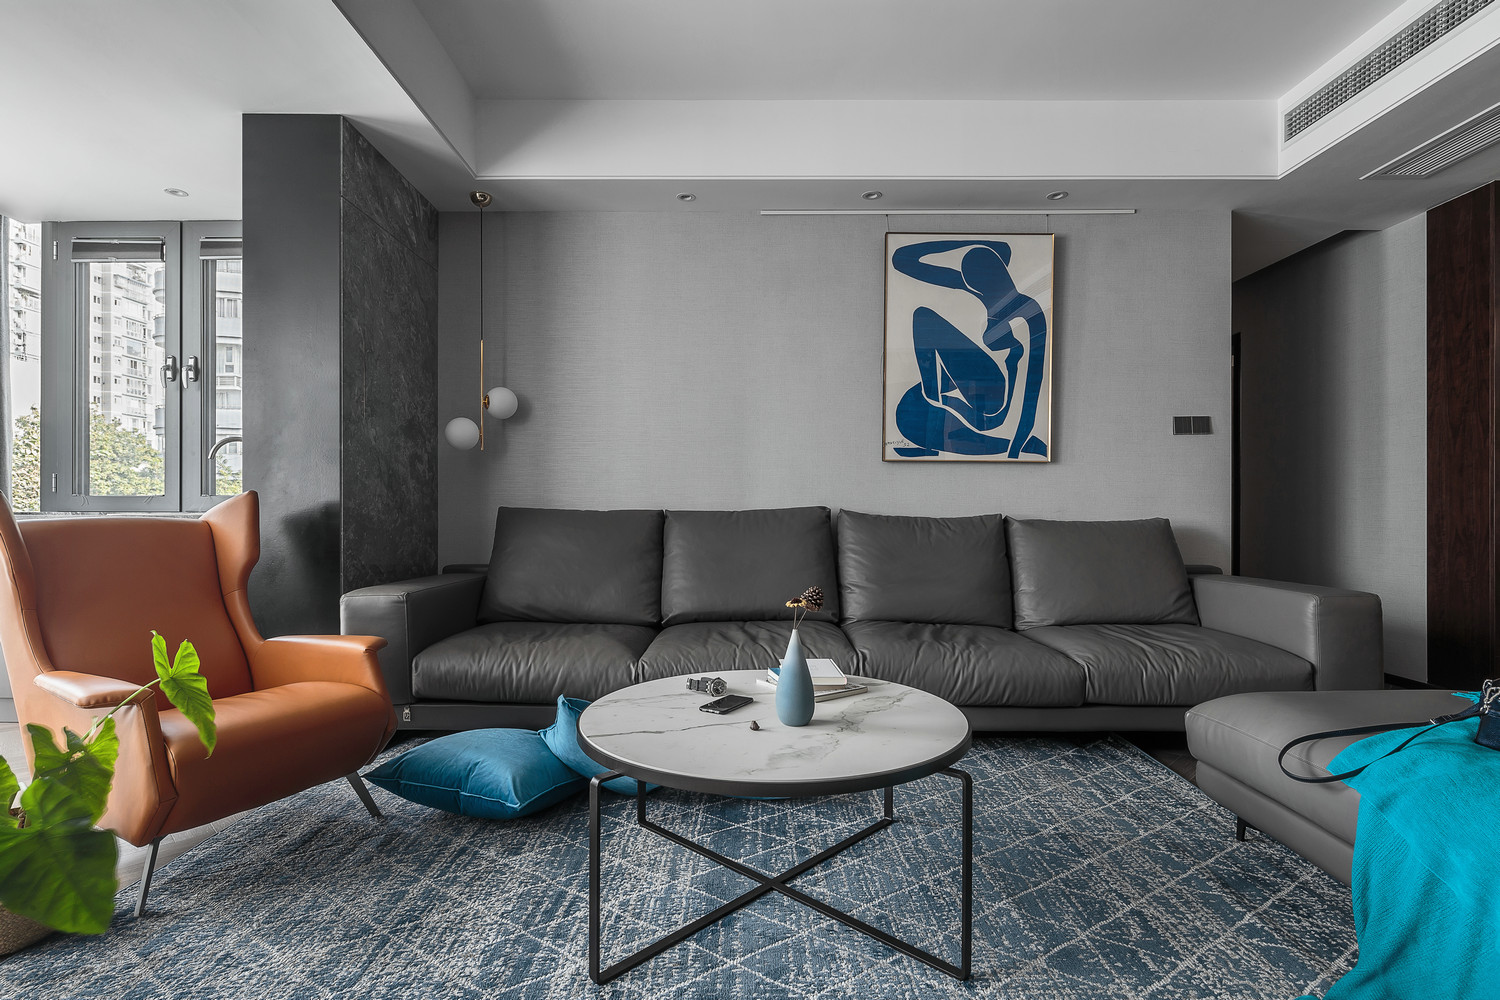 客厅灰色皮质沙发让工业格调更加浓厚,低调中彰显着不凡的气质